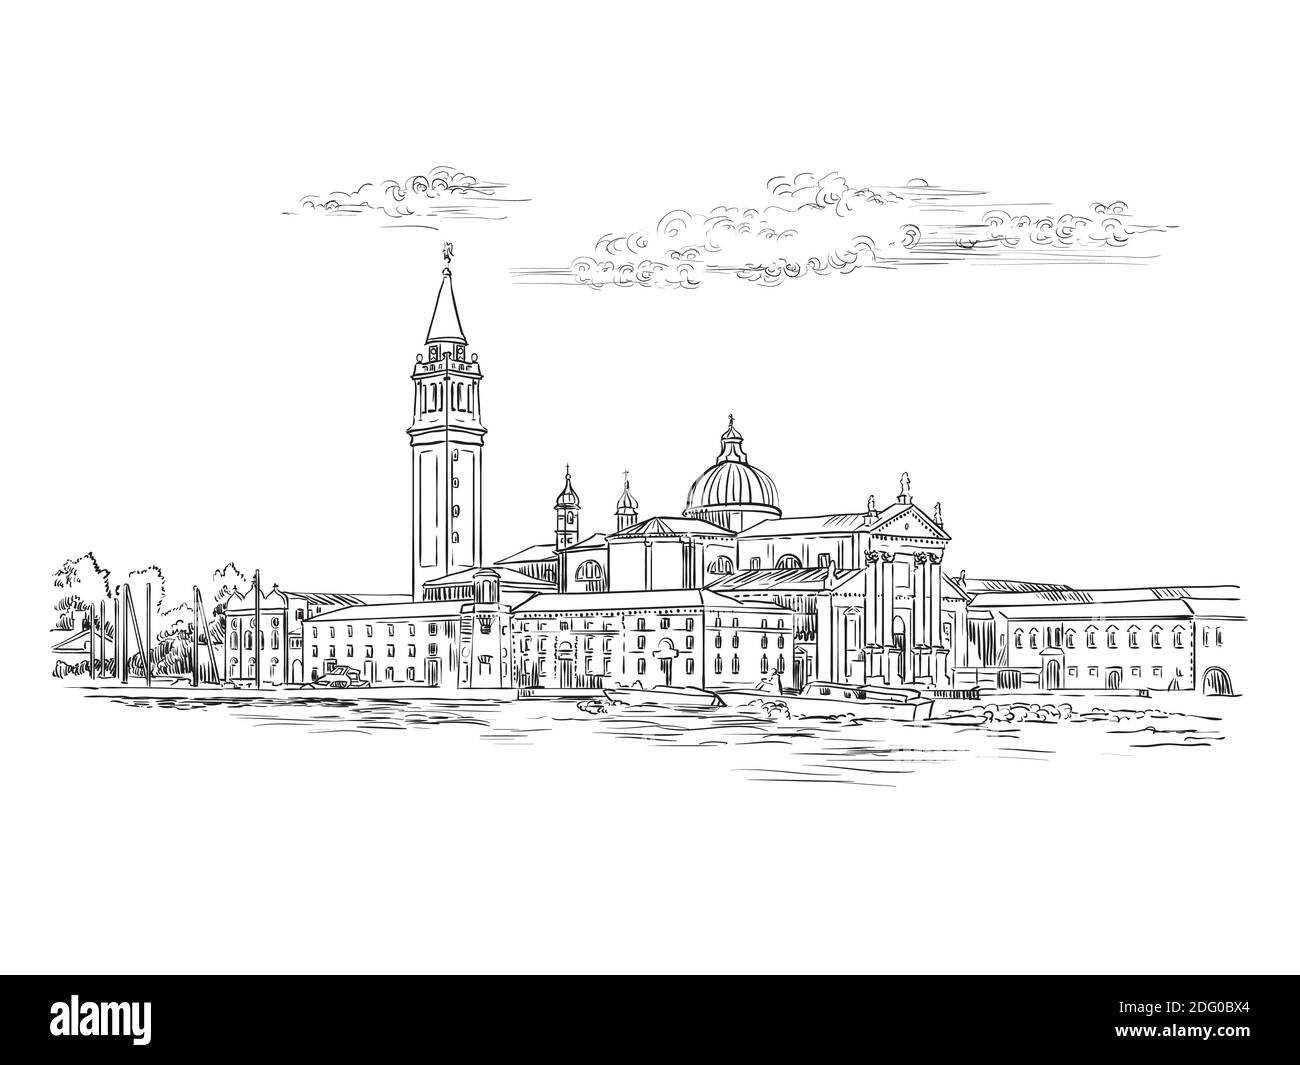 Dessin vectoriel à la main illustration de la vue panoramique de Venise. Esquisse de Venise dessinée à la main en noir, isolée sur fond blanc. Déplacement Illustration de Vecteur